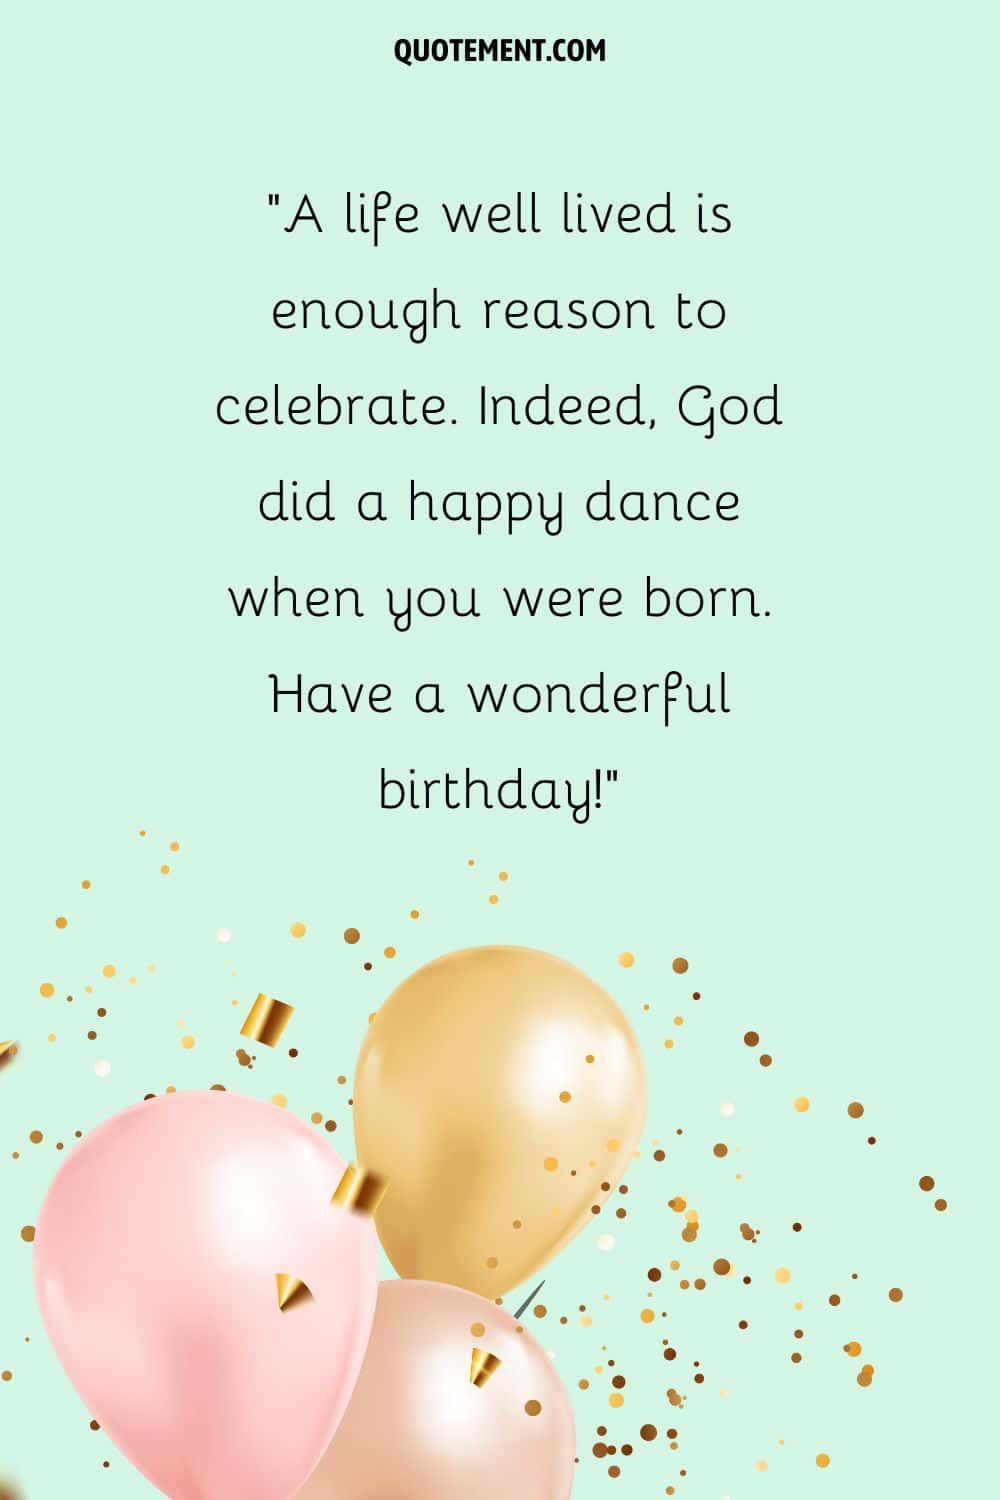 globos de cumpleaños y papelitos dorados